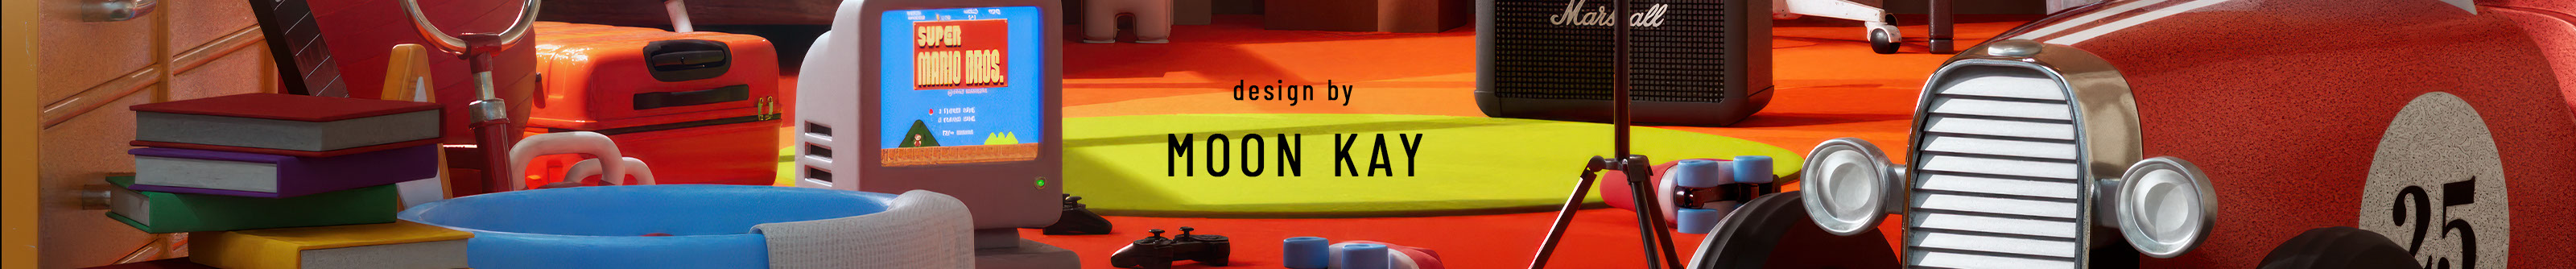 Banner de perfil de Moon Kay